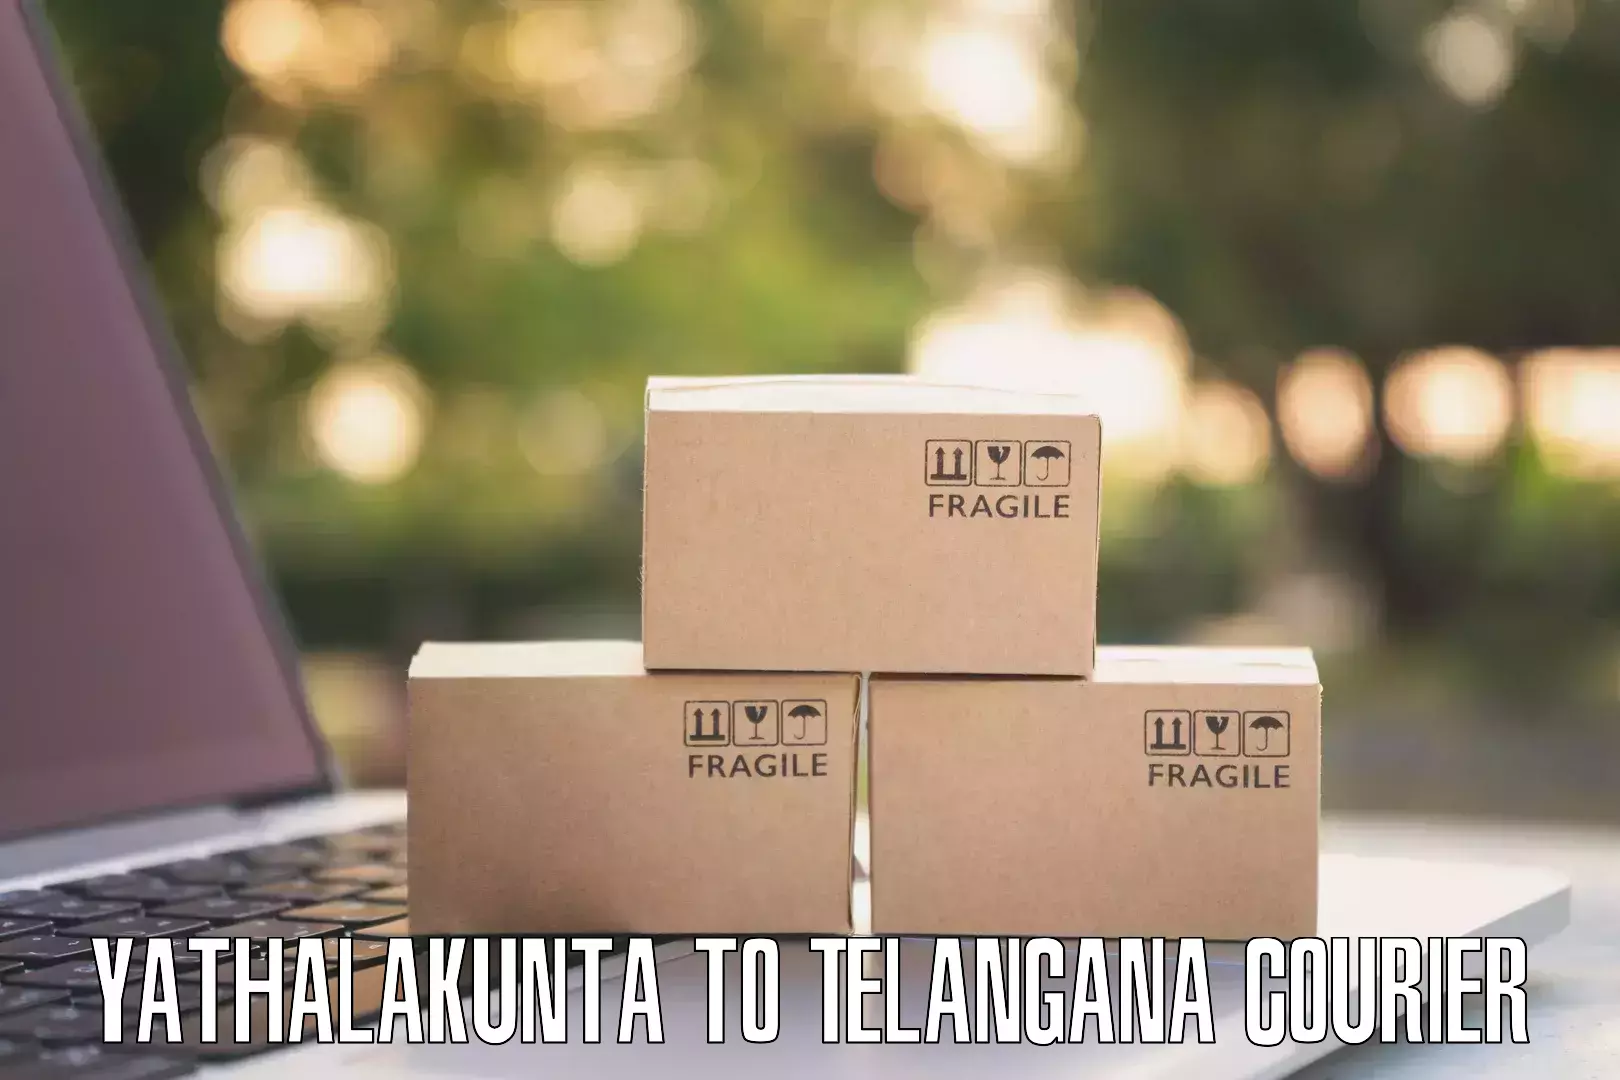 Efficient parcel tracking Yathalakunta to Telangana